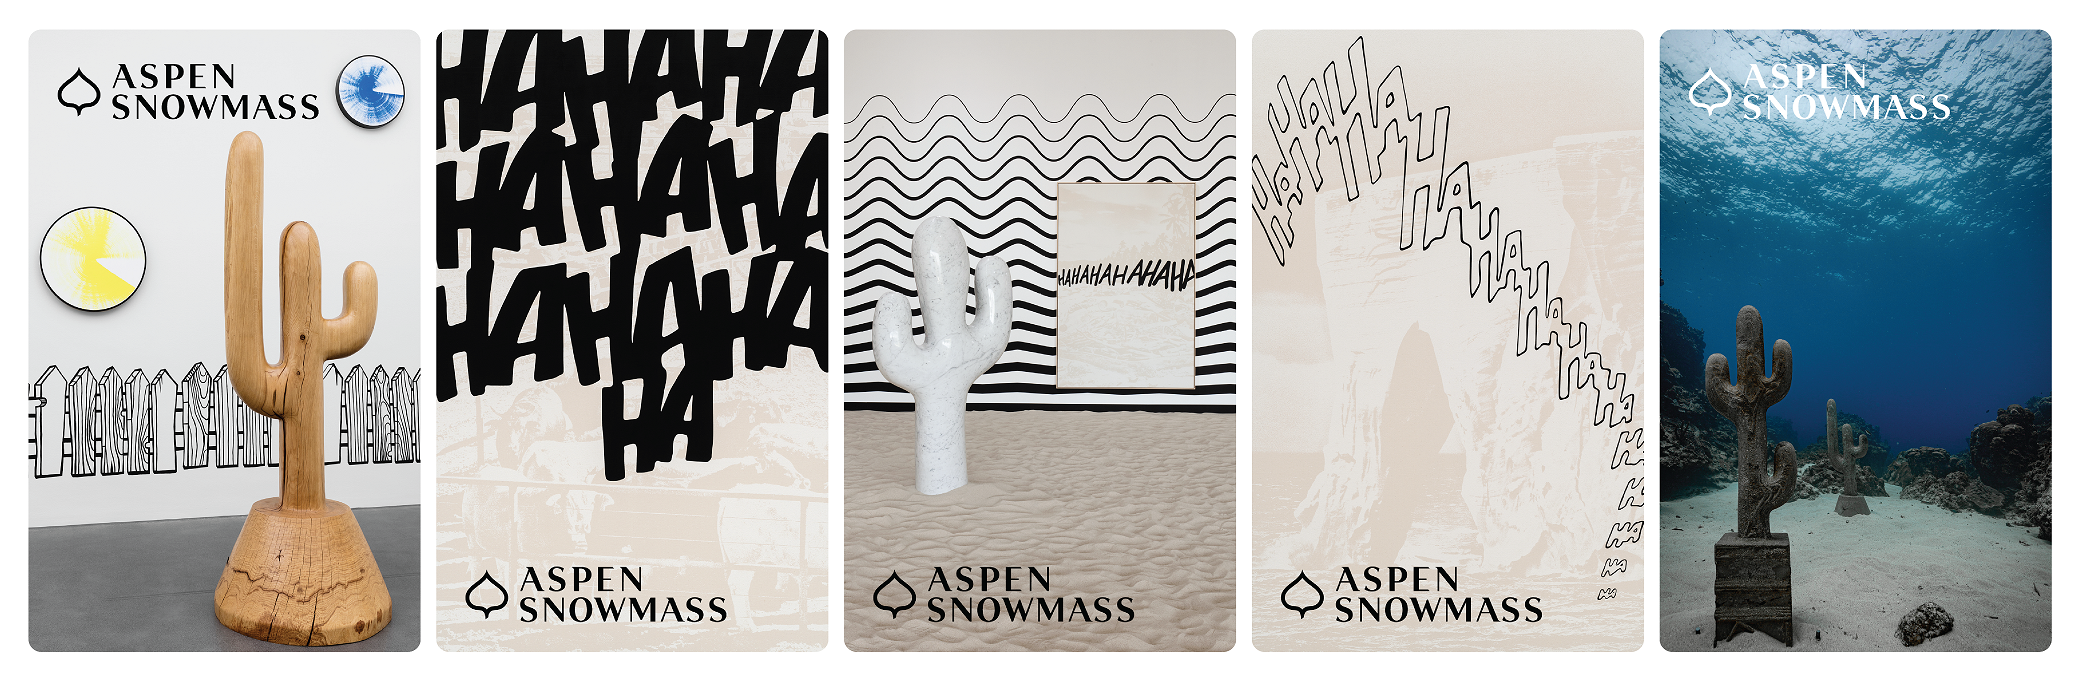 El arte de Claudia Comte será la imagen de los boletos de Aspen Snowmass